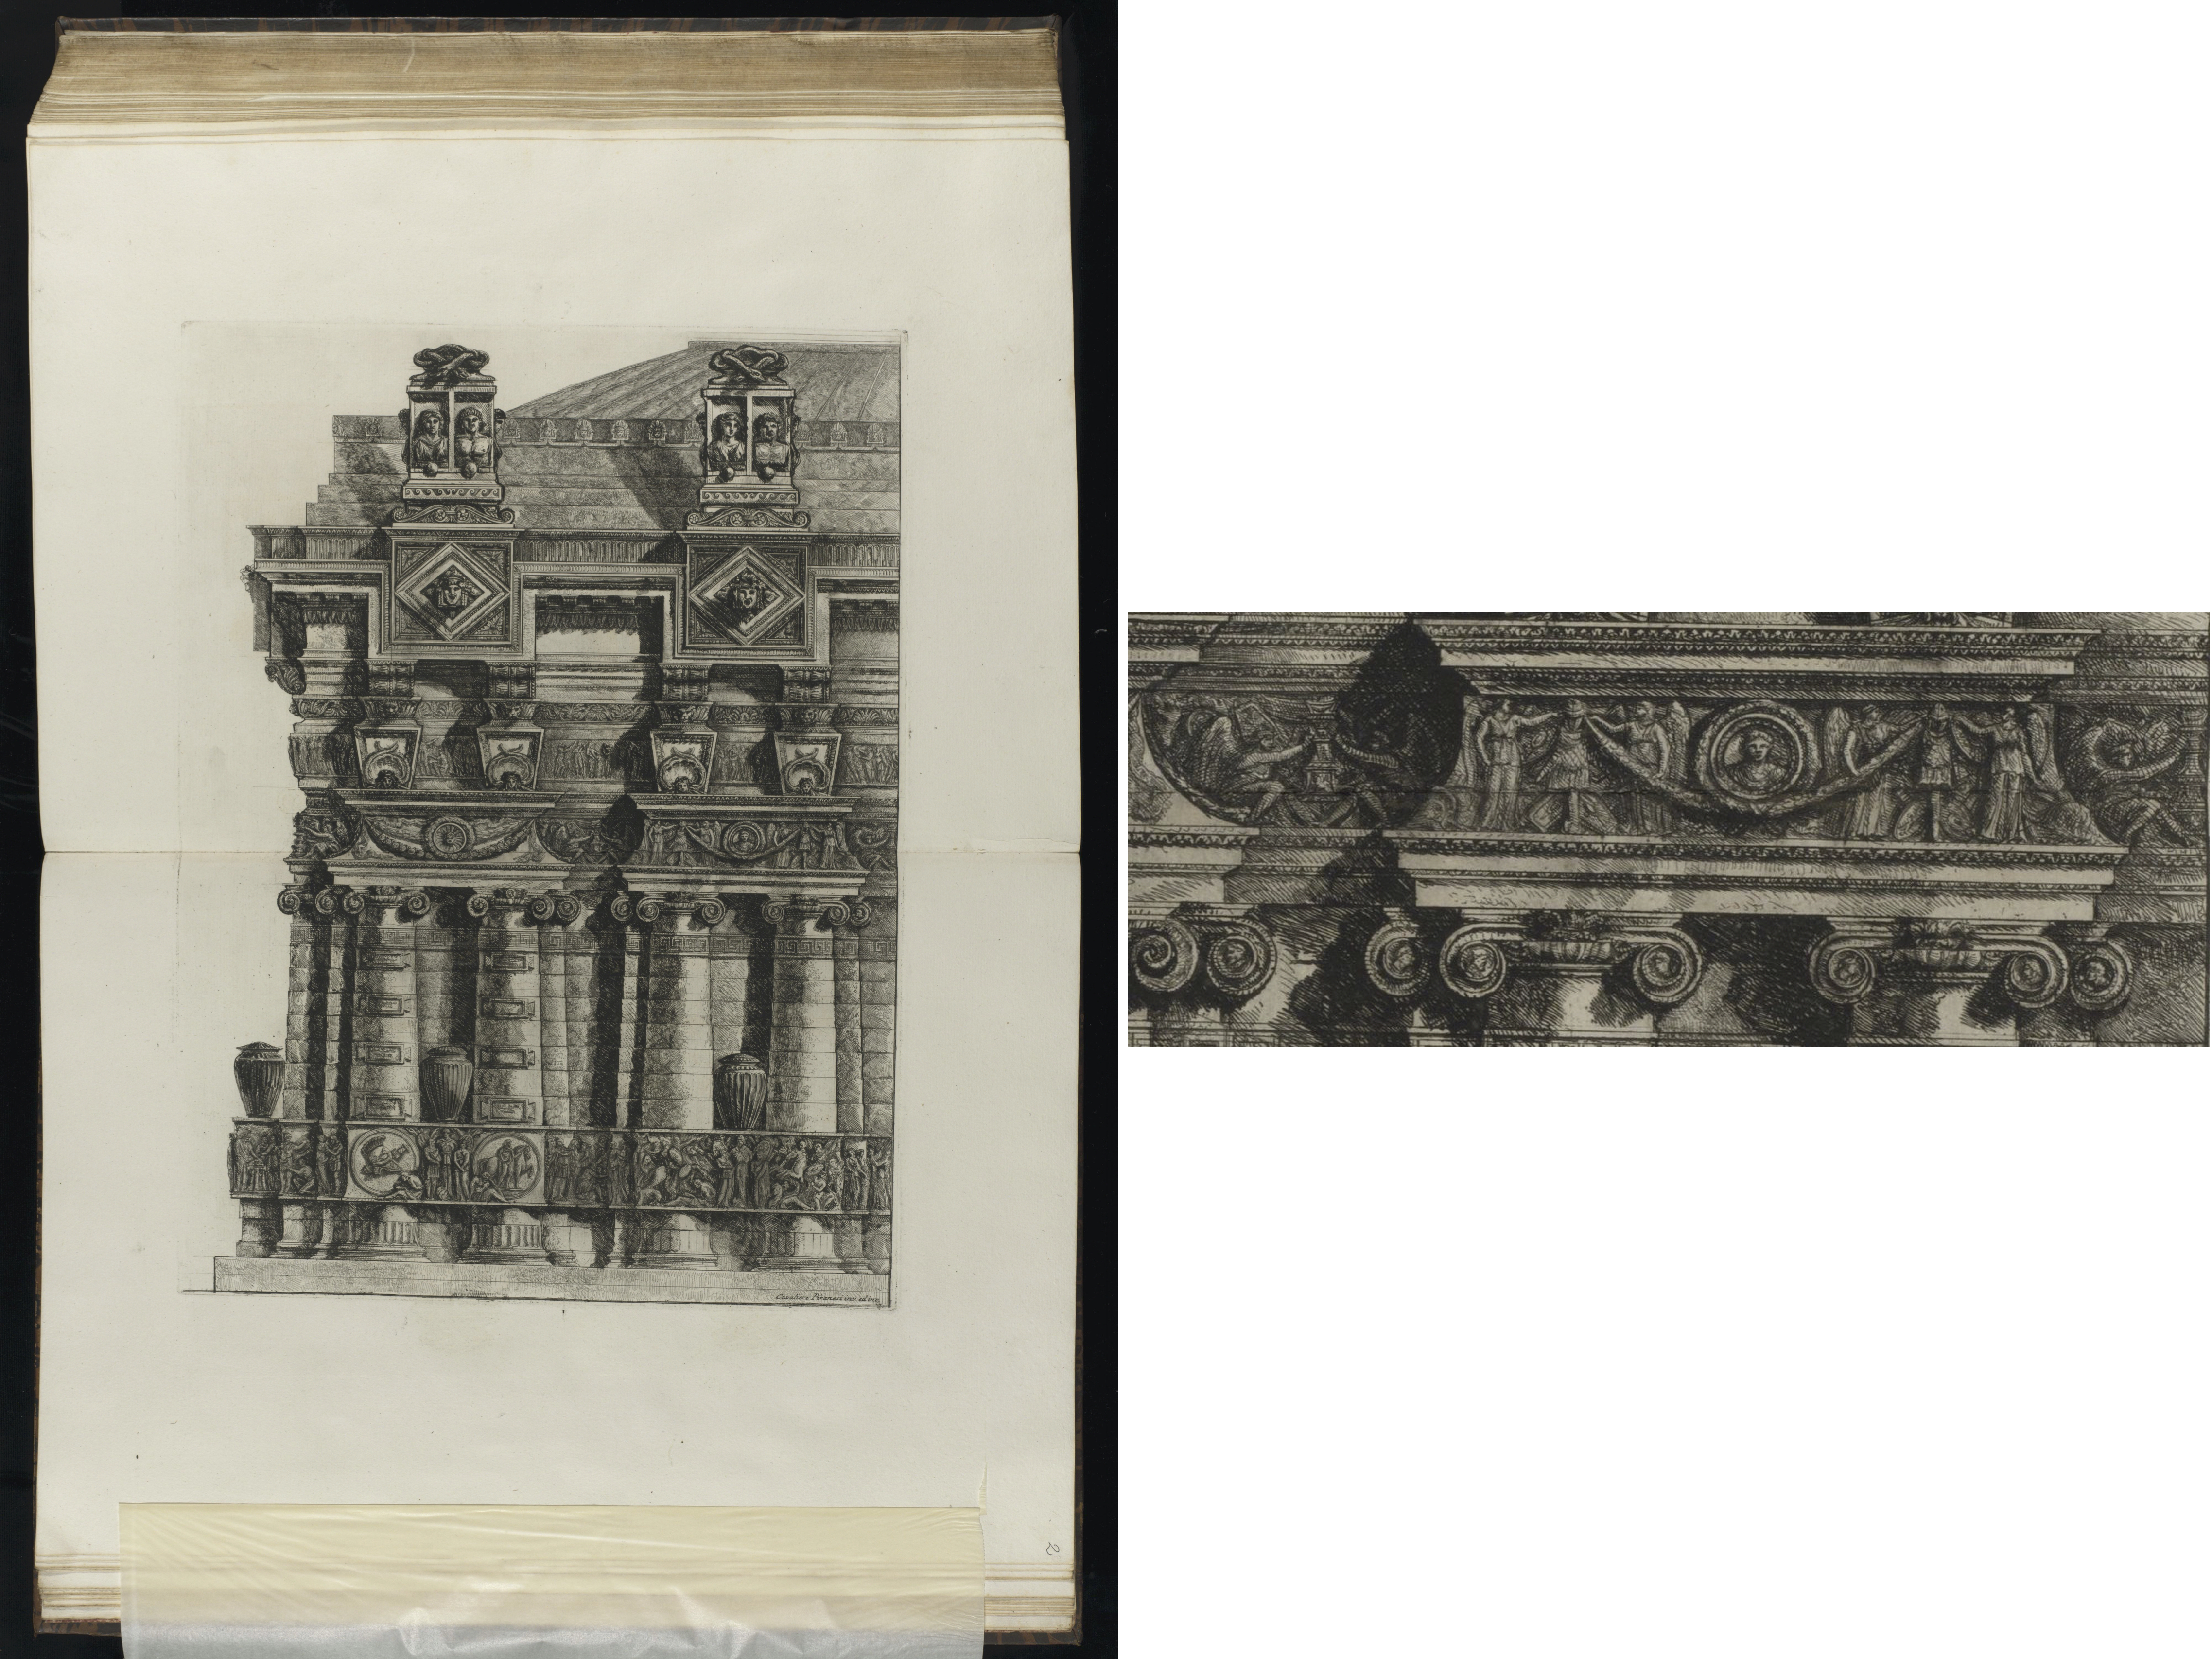 Radierung von Giovanni Battista Piranesi mit einer Zusammenstellung von Motiven alter Kulturen. Ein Detail der Radierung ist in der Bildmontage vergrößert dargestellt. Es handelt sich um einen Reliefausschnitt